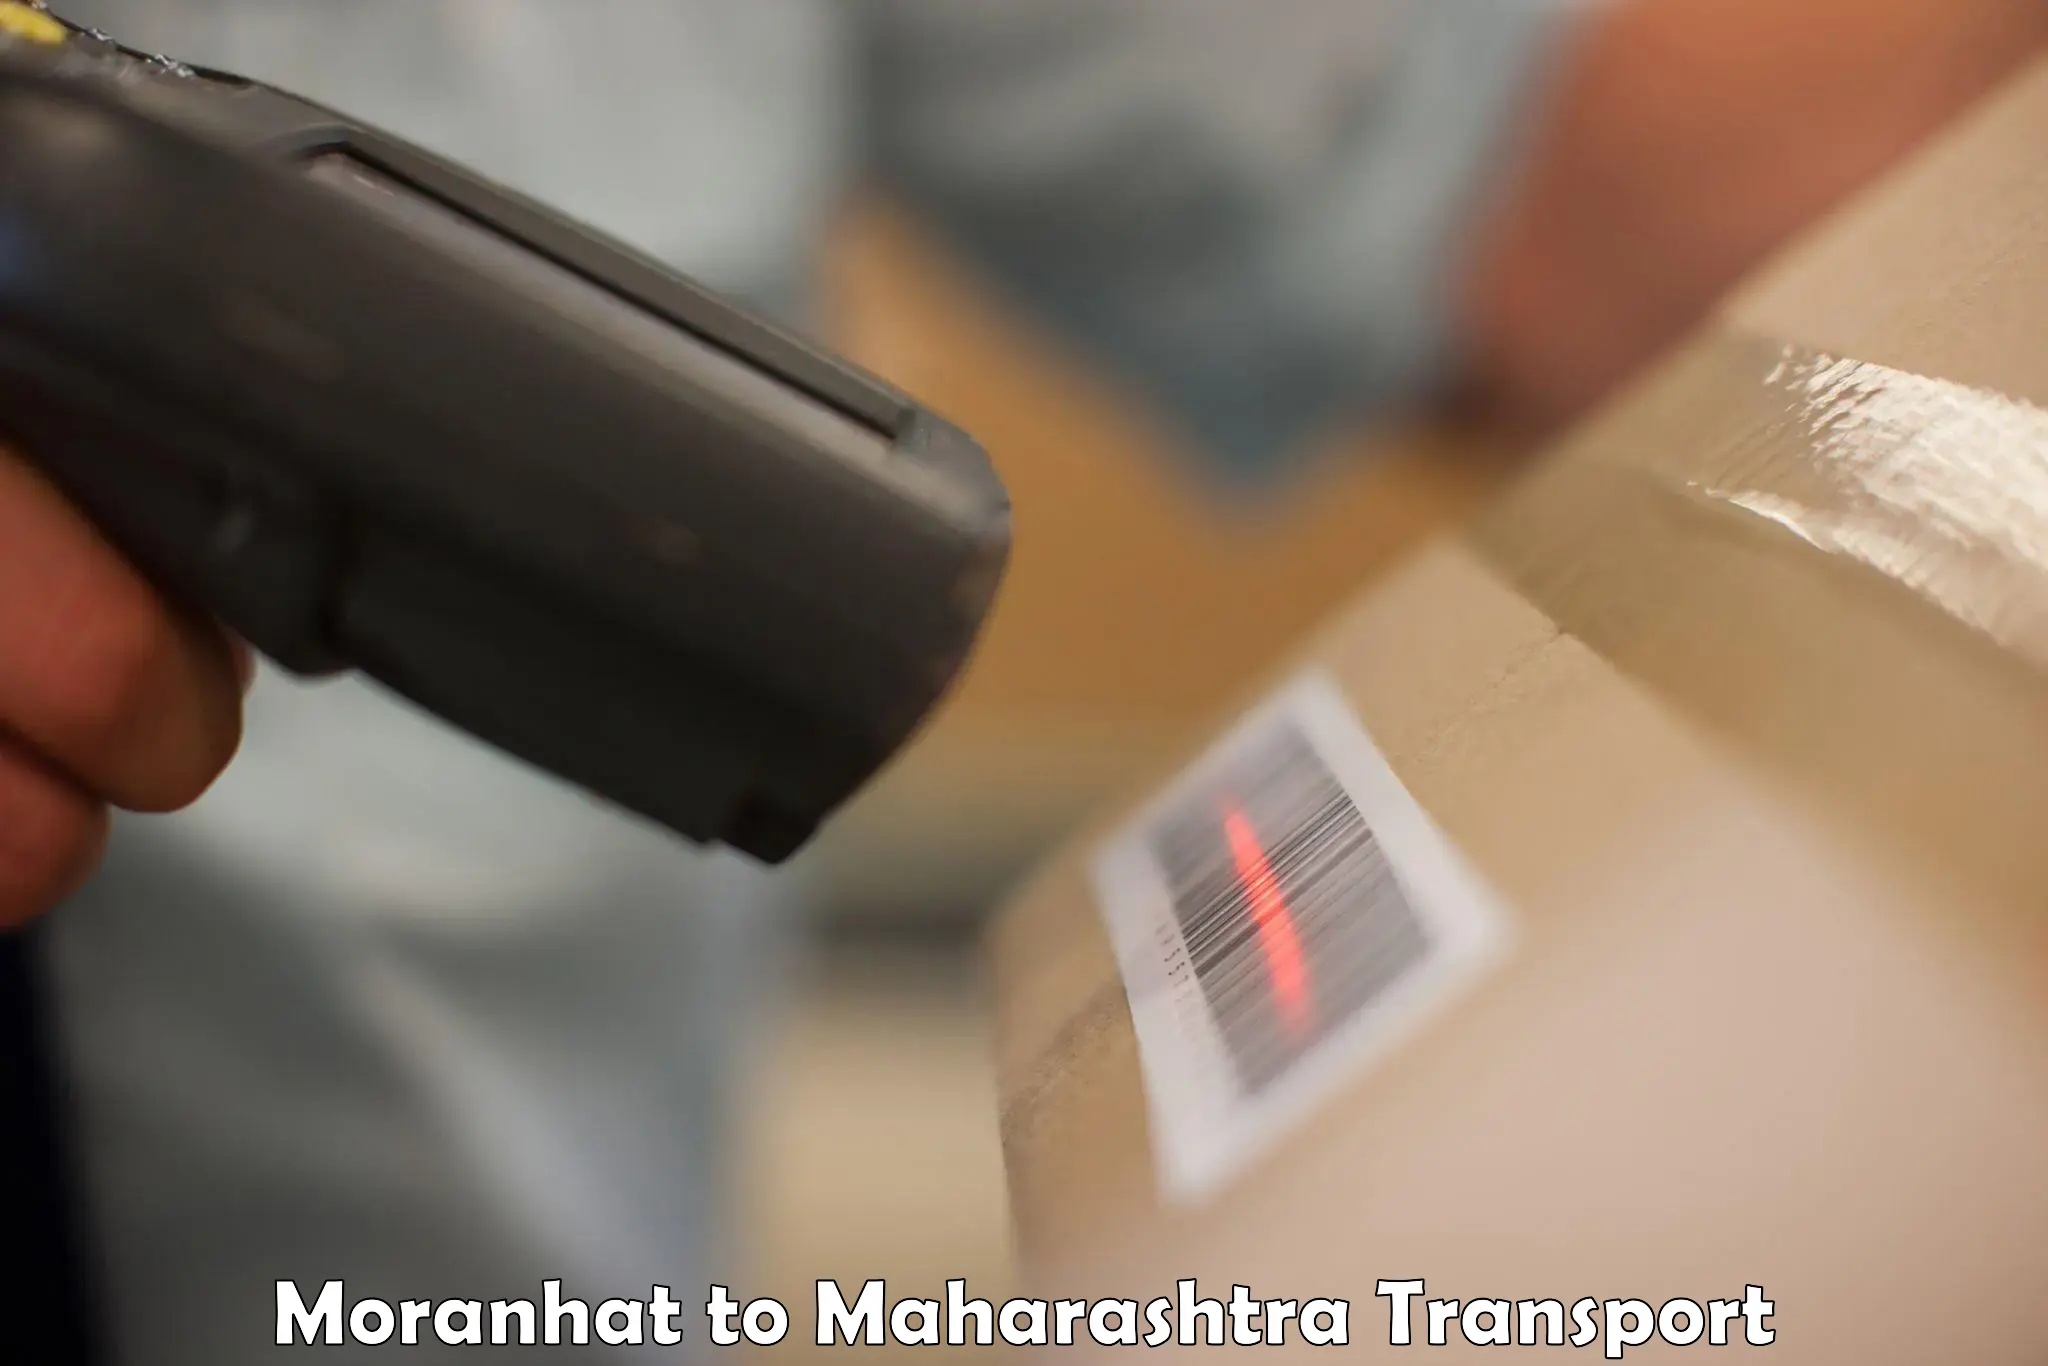 Online transport service Moranhat to Talere